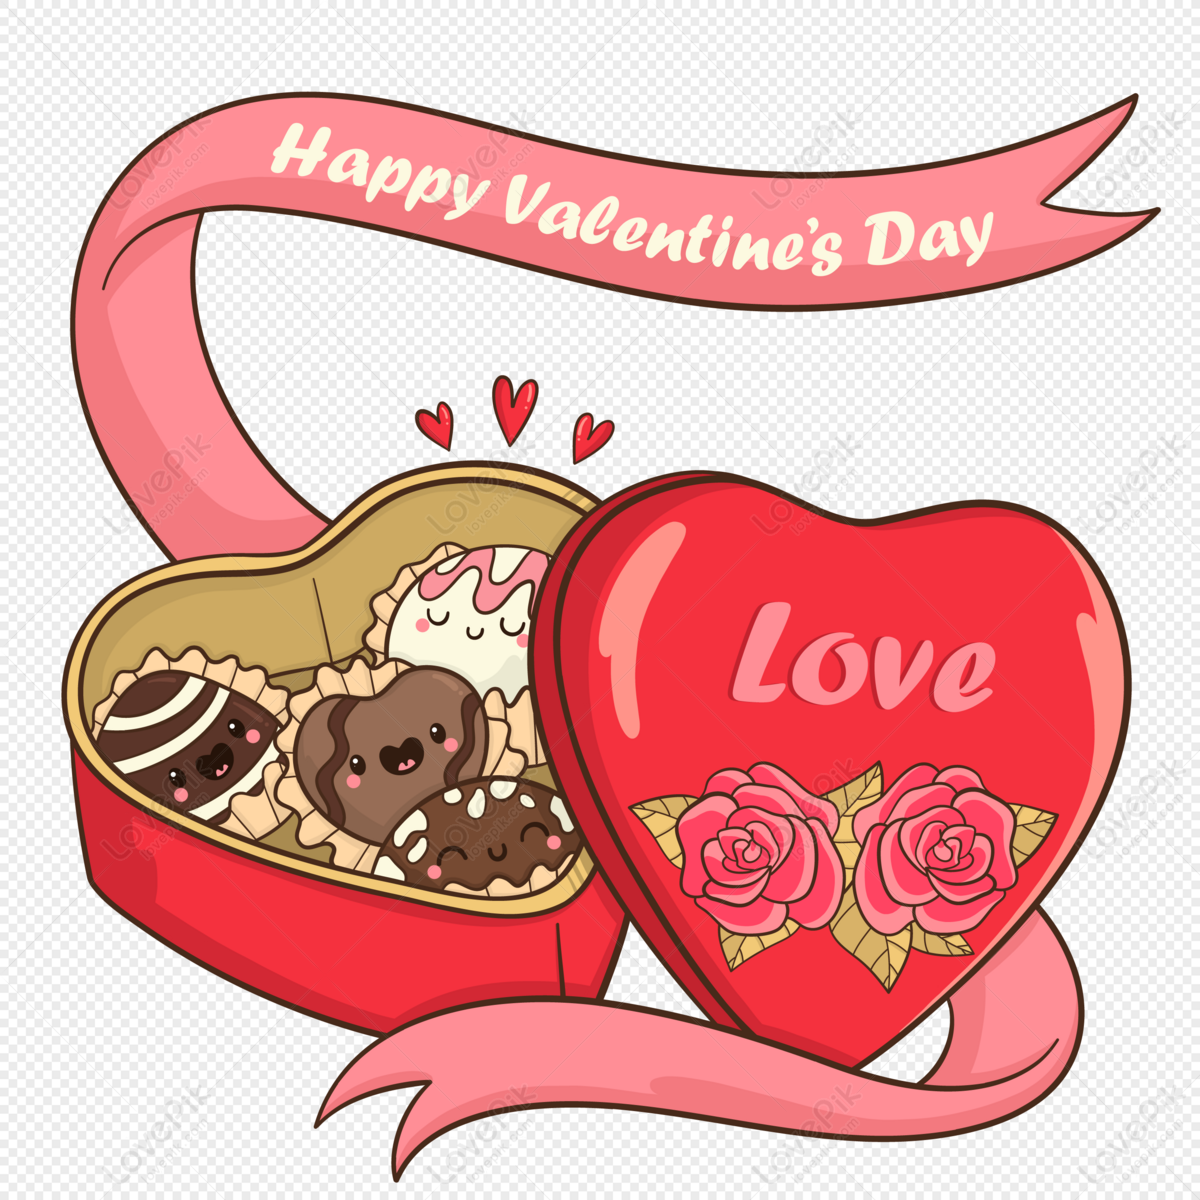 Ngày Valentine không thể thiếu được sôcôla, là một món quà ngọt ngào để bày tỏ tình cảm của bạn. Hãy cùng chiêm ngưỡng những hình ảnh về sôcôla ngày Valentine để cảm nhận được vẻ đẹp và hương vị đặc biệt của món quà này trong ngày lễ tình nhân đầy ý nghĩa!